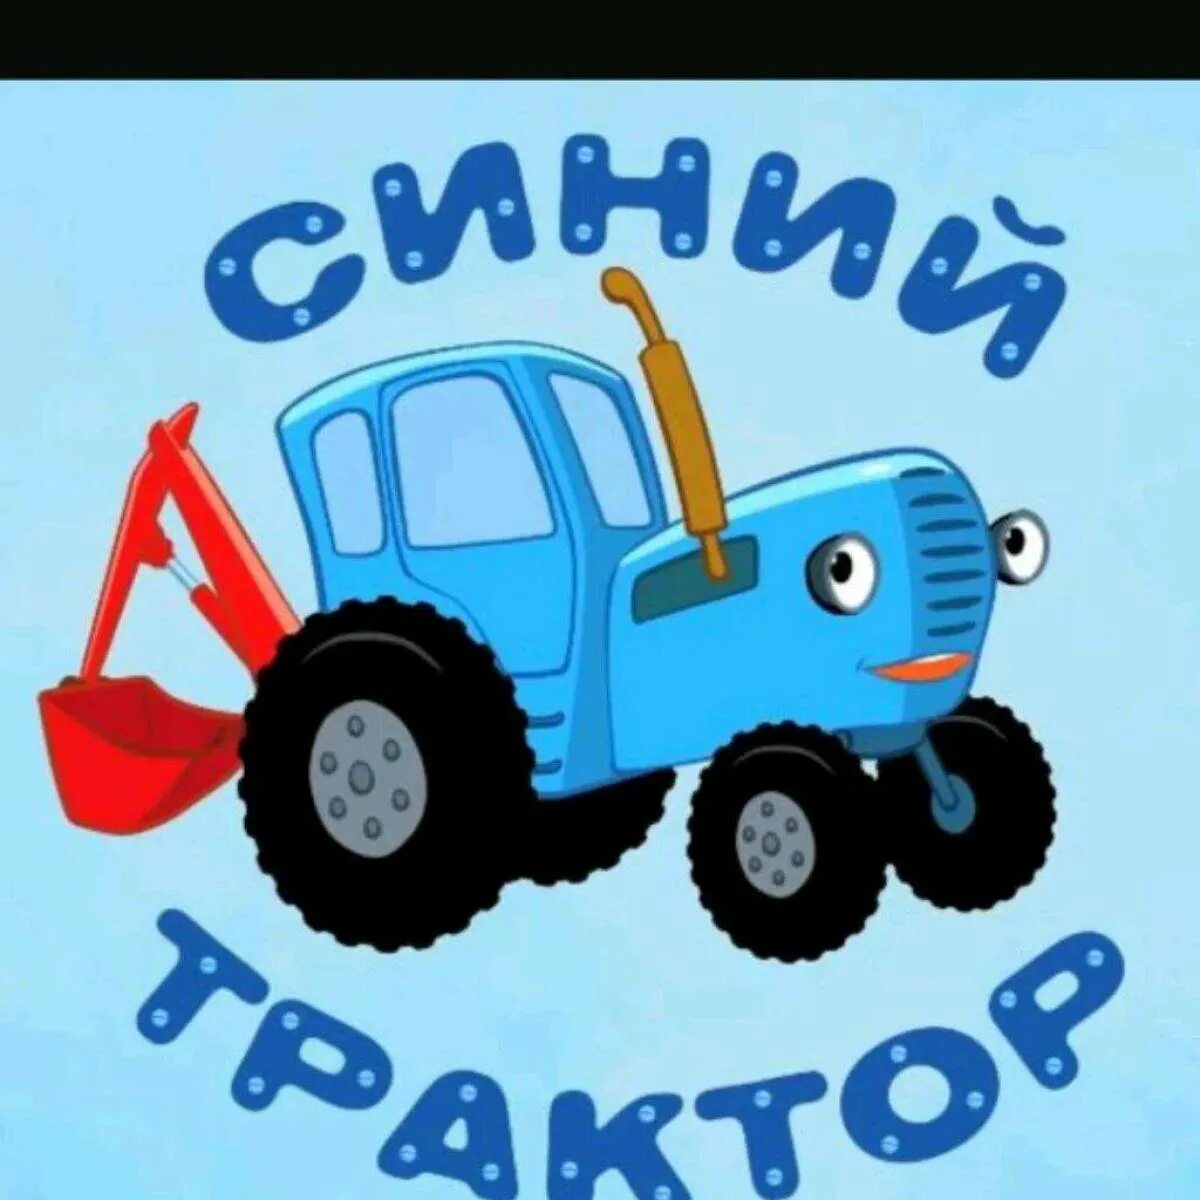 Синий трактор 30. Синий трактор трактор Гоша. Сини1 синий трактор. Габор синий трактор. Синий трактор для малышей ТРАКТОРЕНОК.